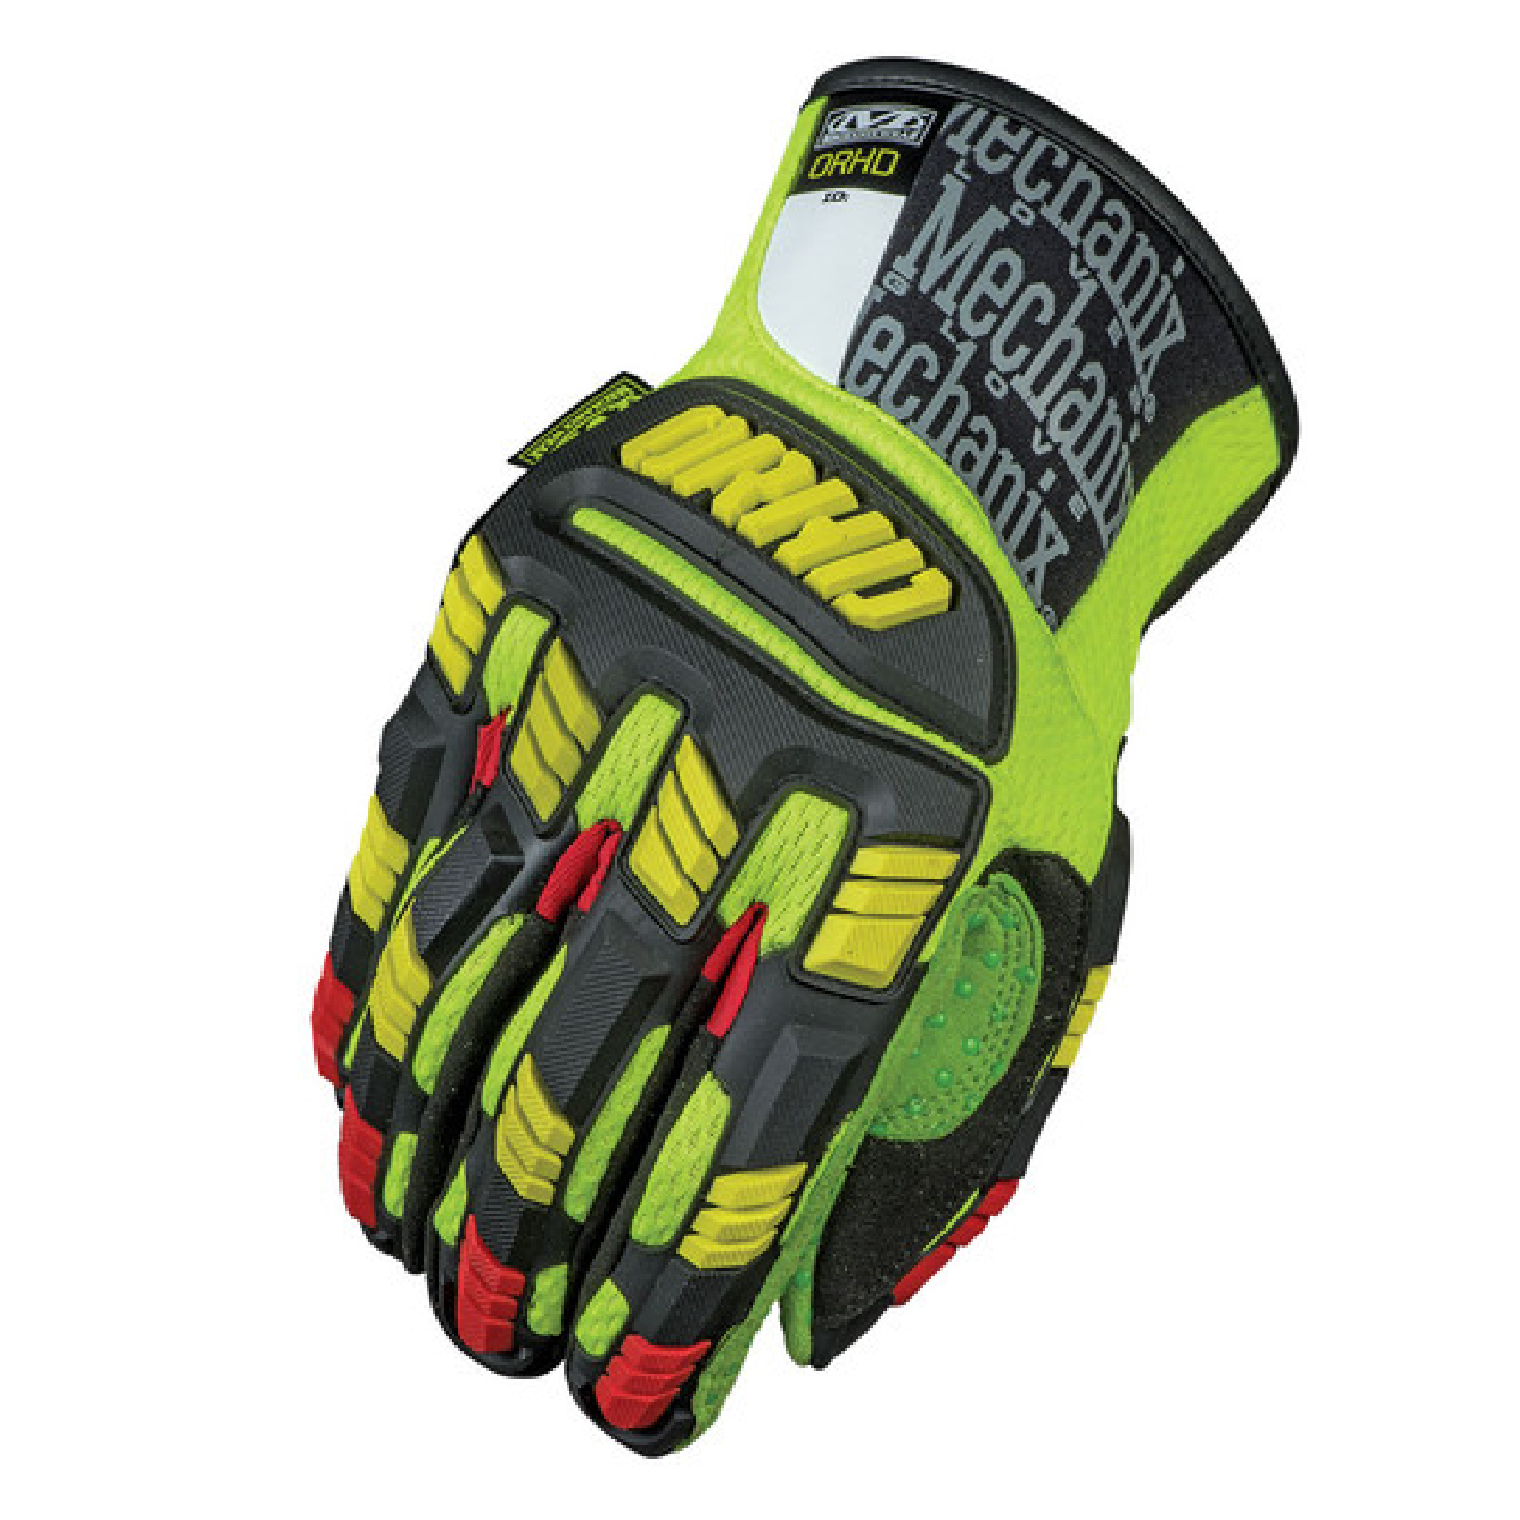 Mechanix Wear ORHD-91 OIL & GAS IMPACT Resistant Glove HI-VIZ YELLOW